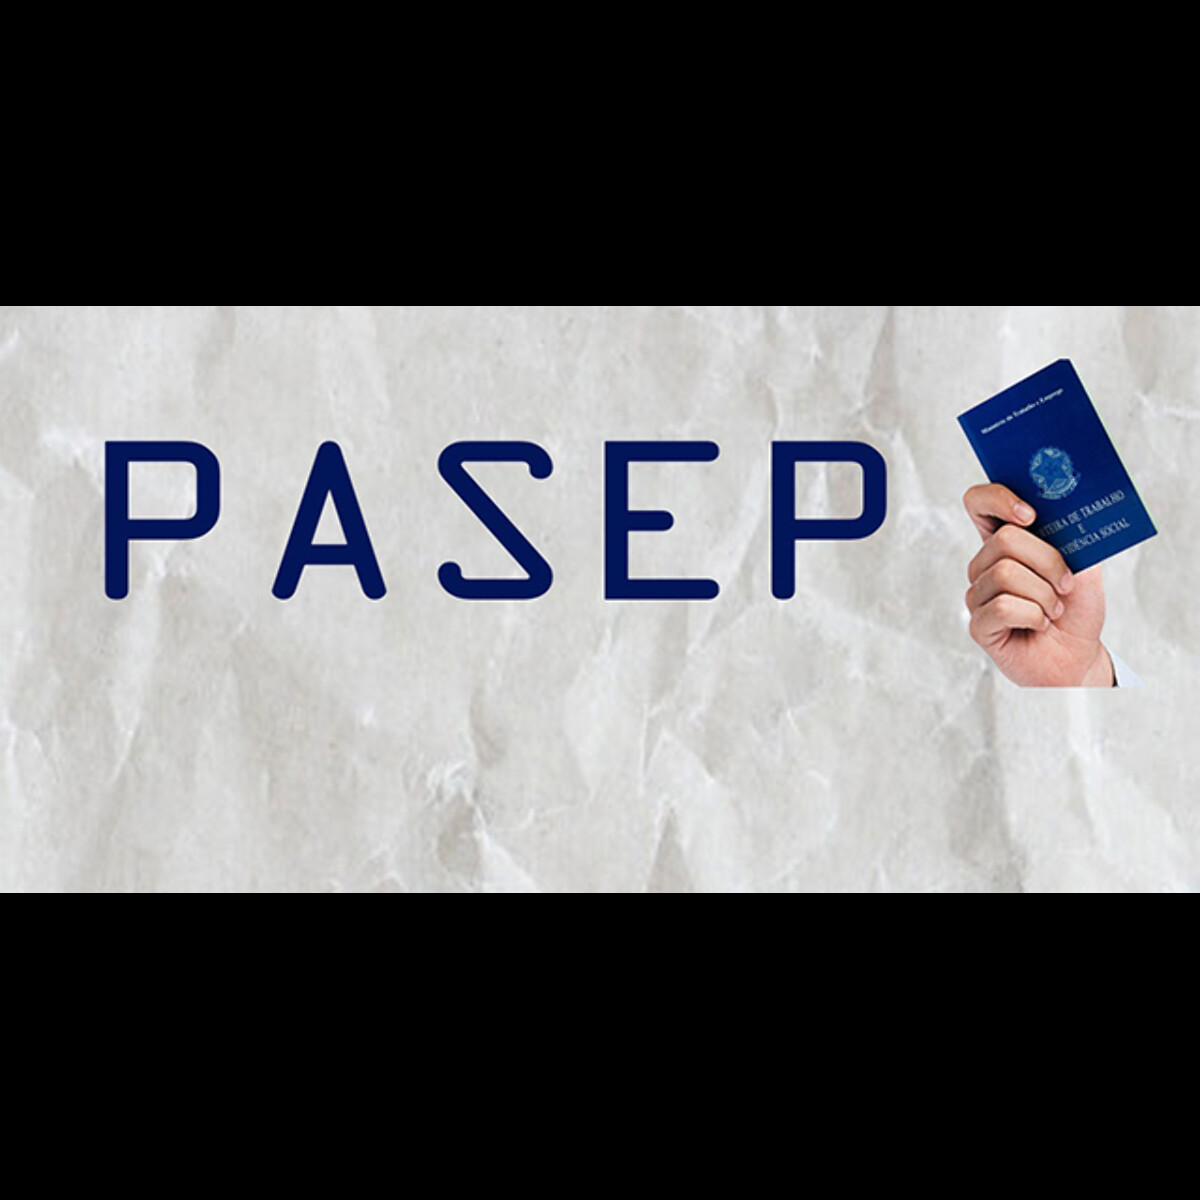 Sindsef-RO informa que já possui ação coletiva do Pasep - CONDSEF